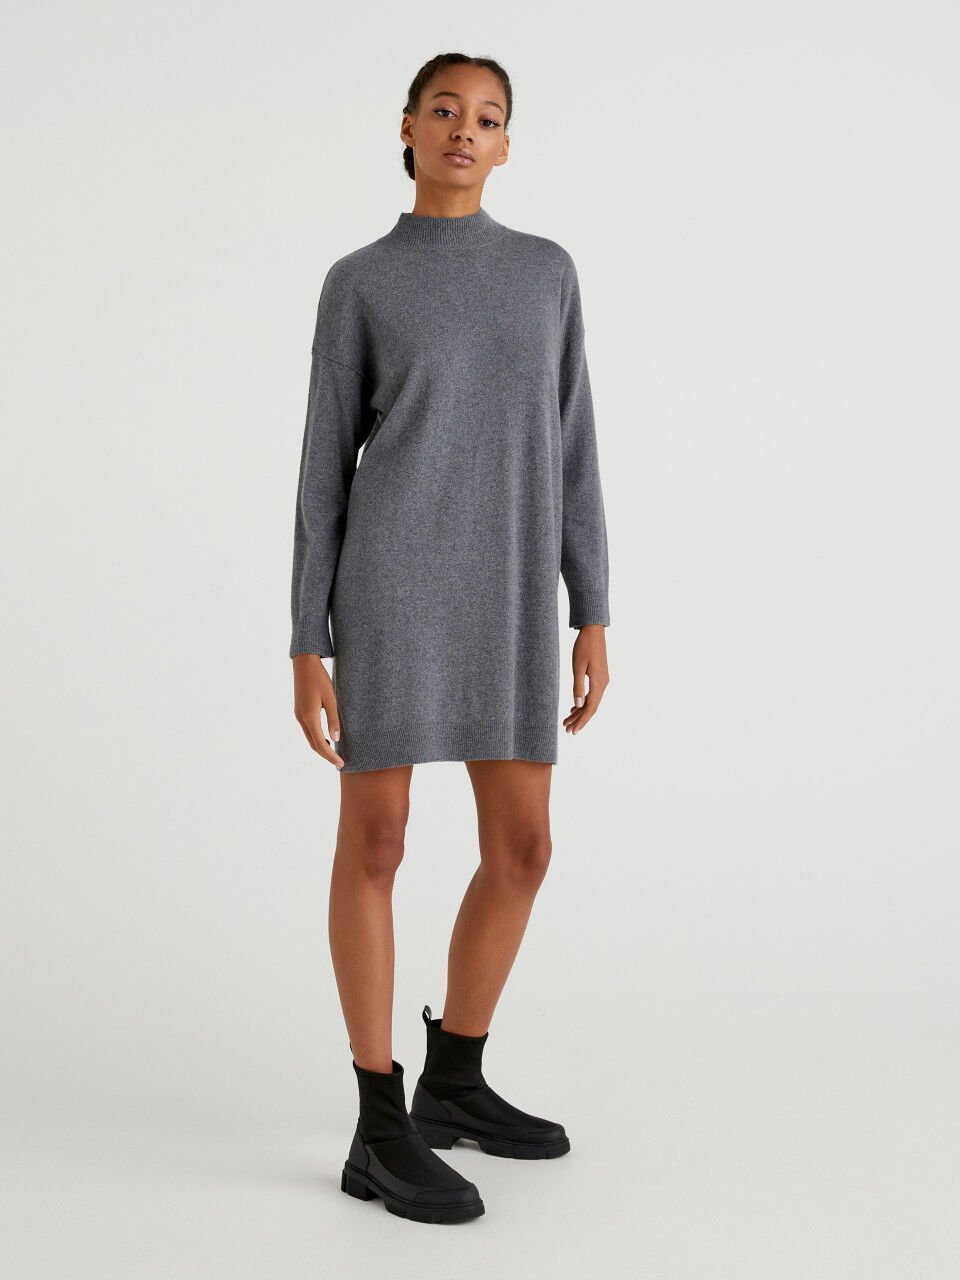 Short sweater dress